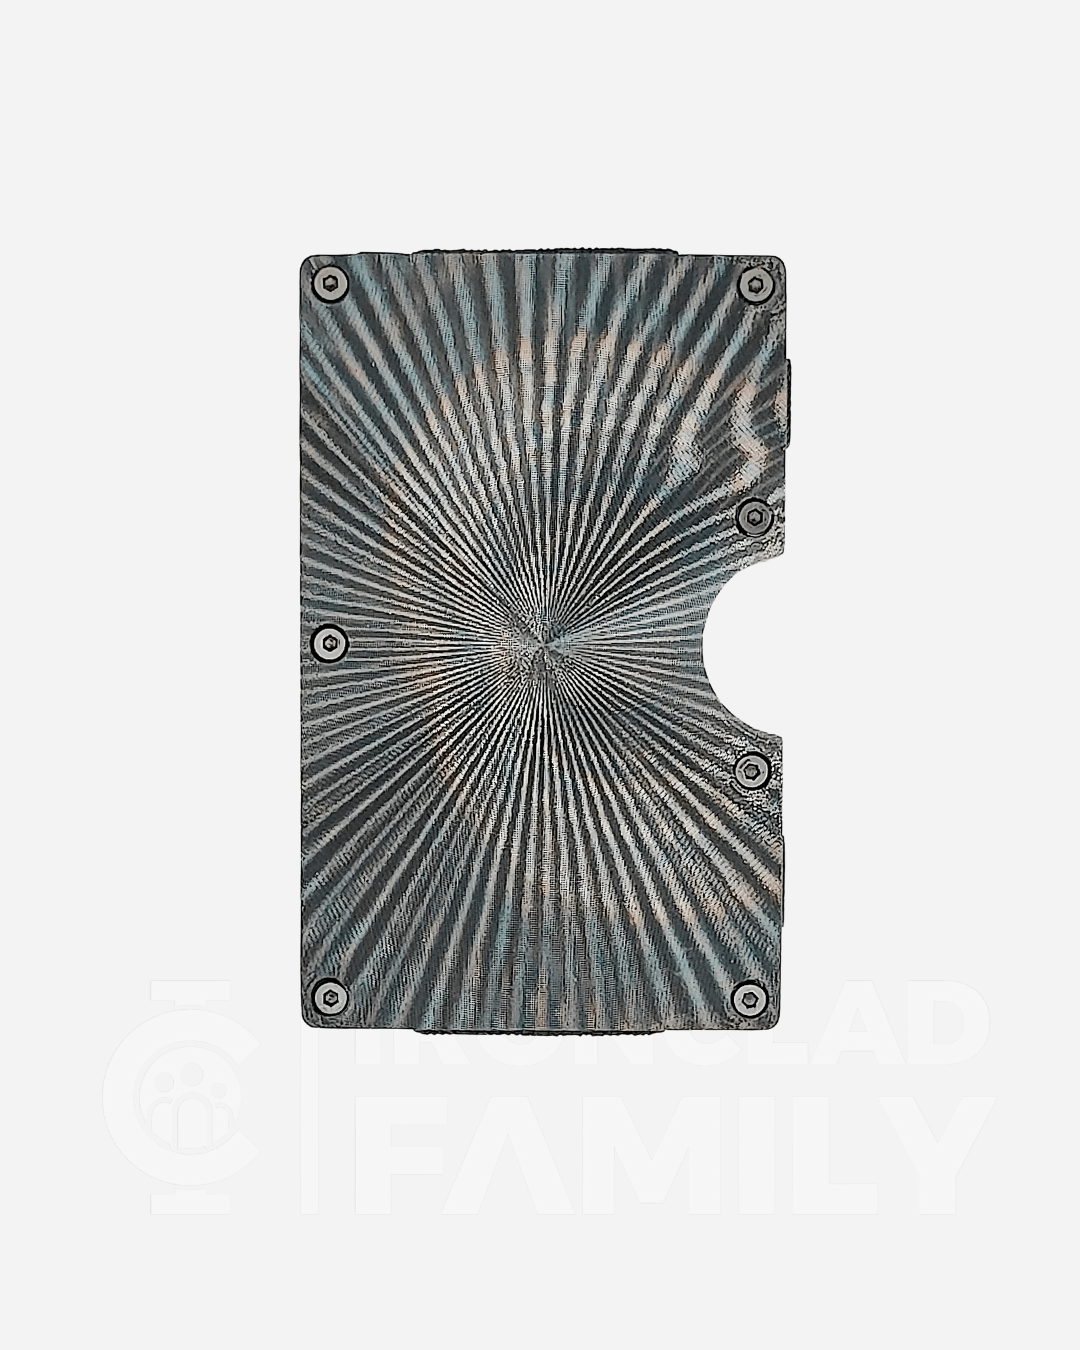 Textured metal RFID blocking wallet with circular design